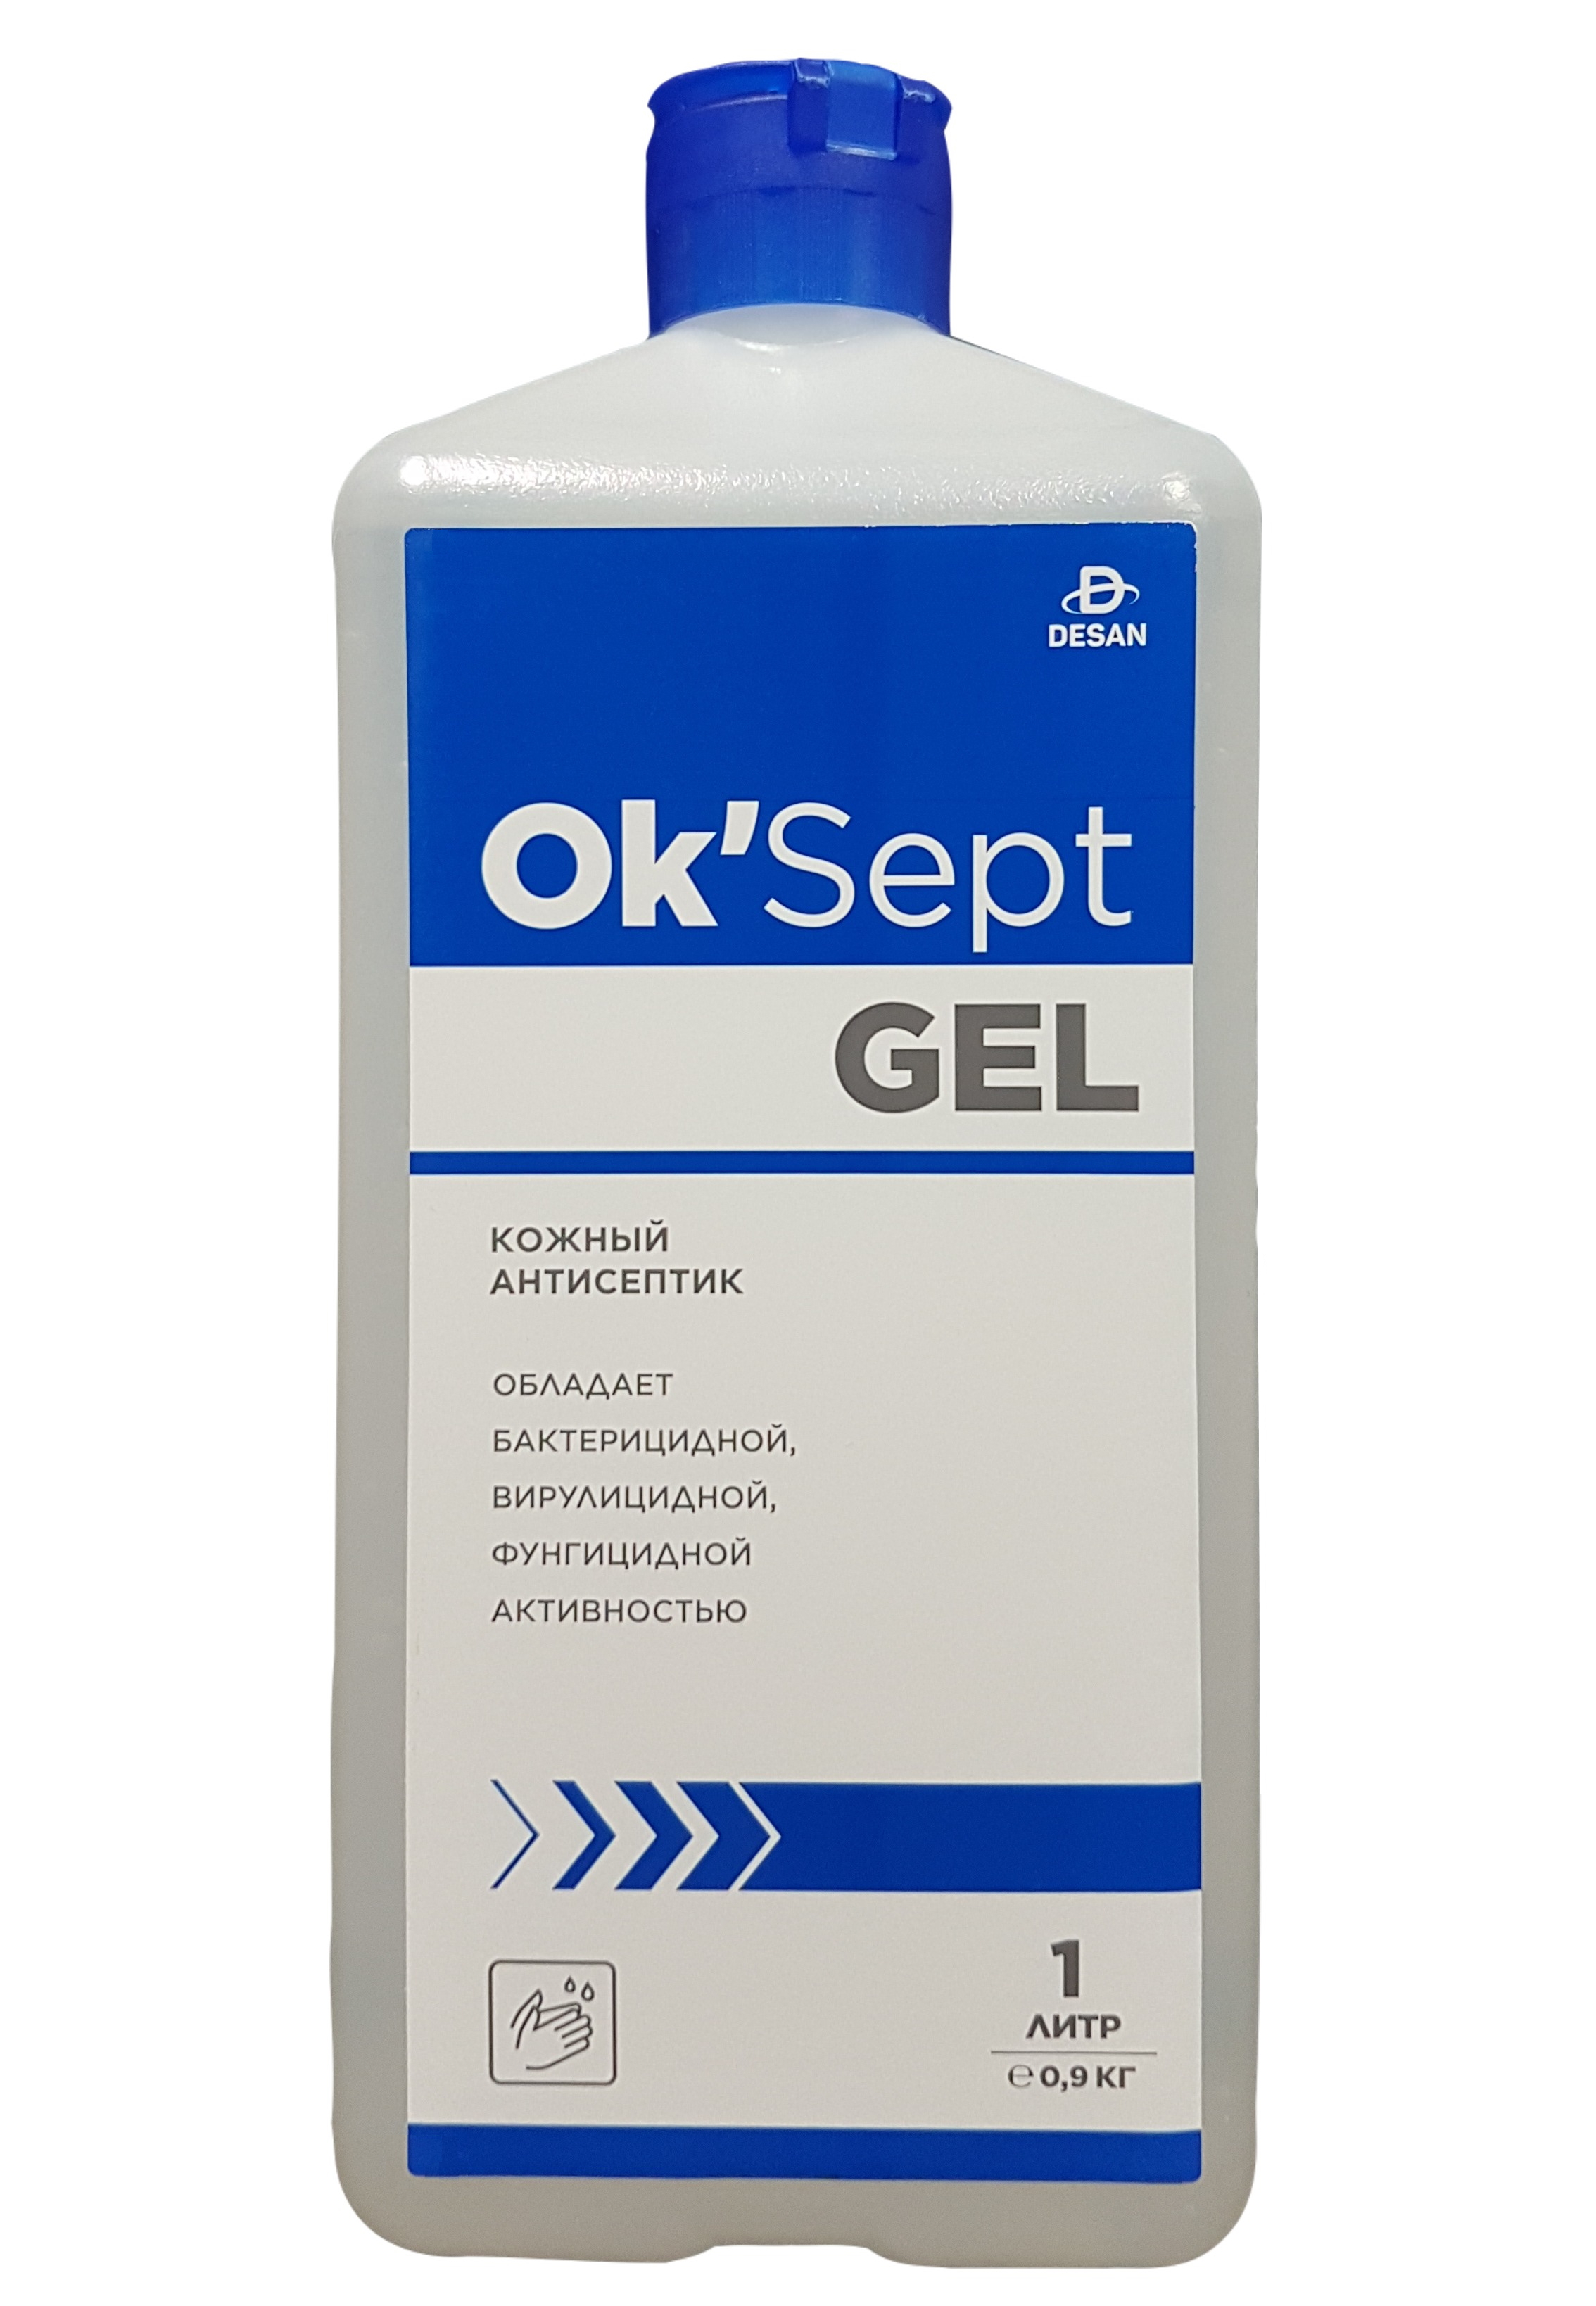 Антисептическое средство OK’Sept gel (ОК'Септ гель) 1 литр антисептическое средство люмакс профи 500 мл с дозатором